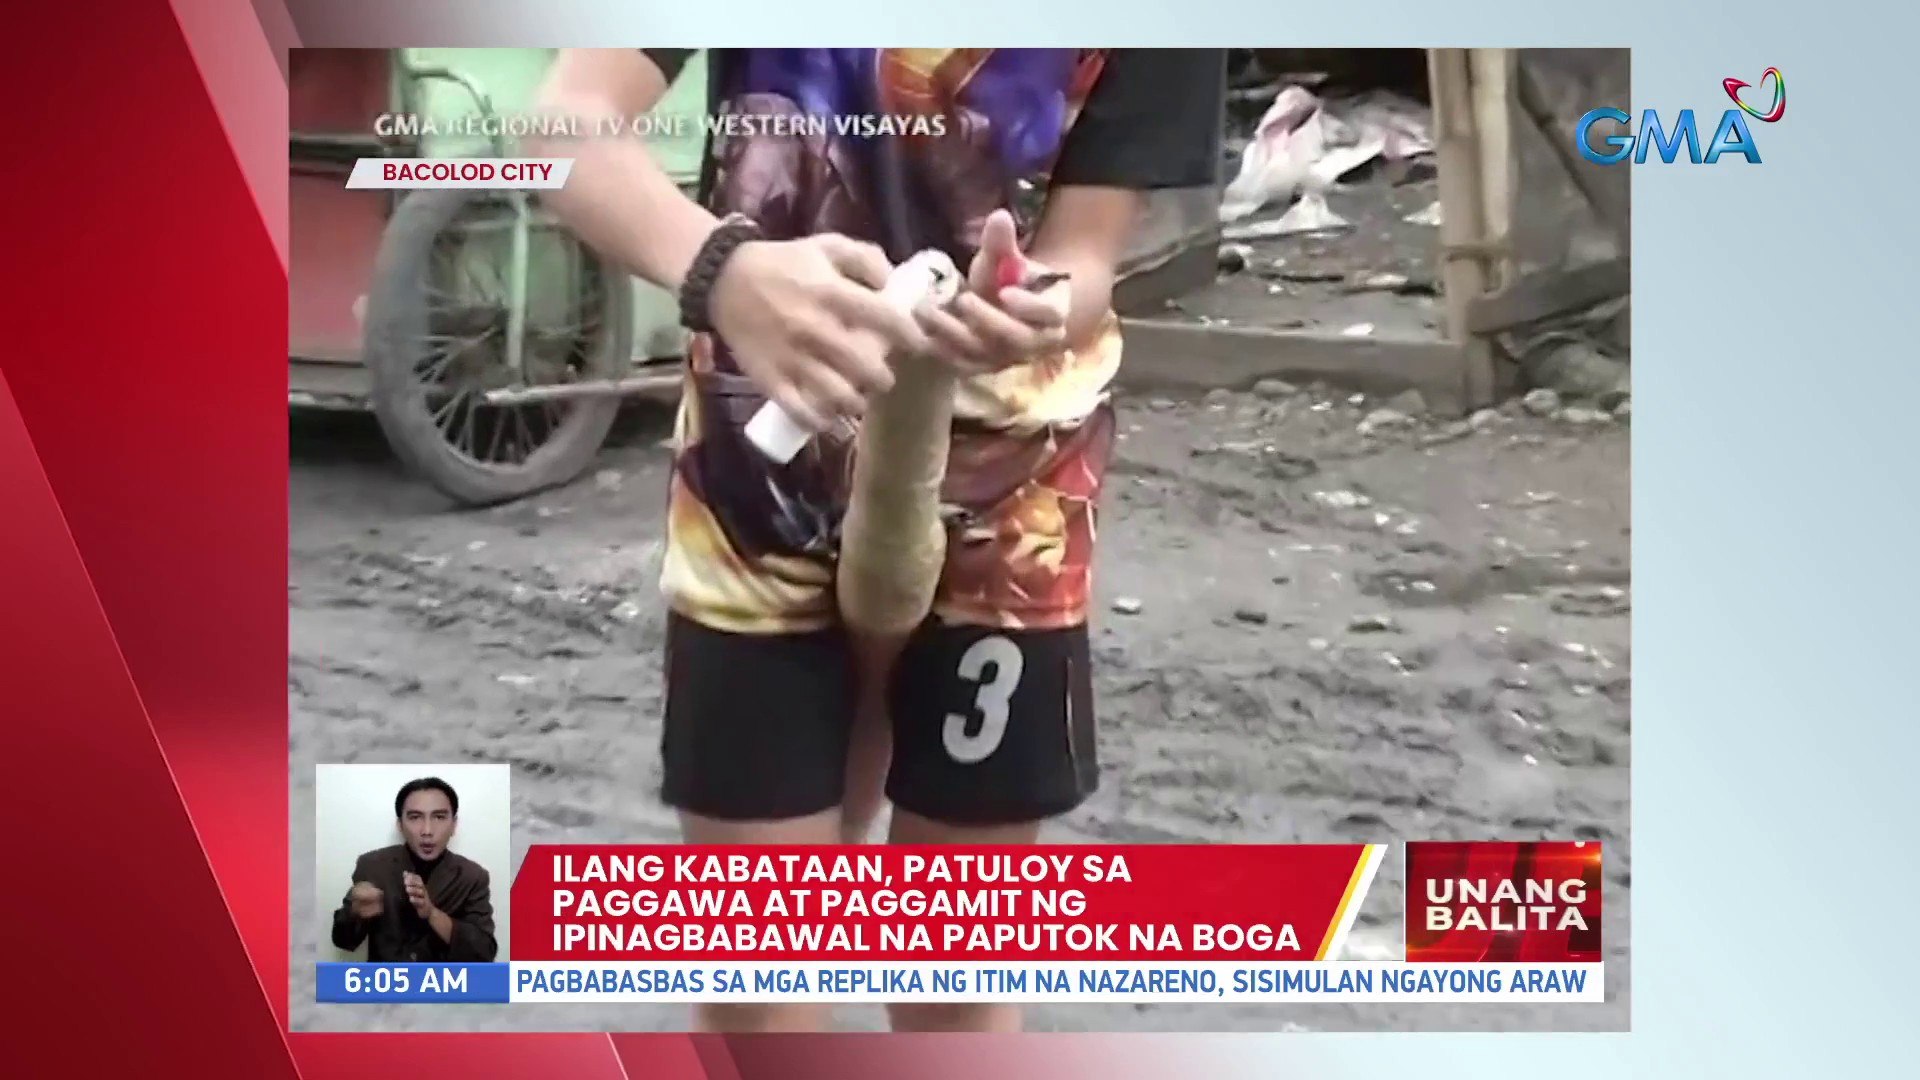 Ilang kabataan, patuloy sa paggawa at paggamit ng ipinagbabawal na